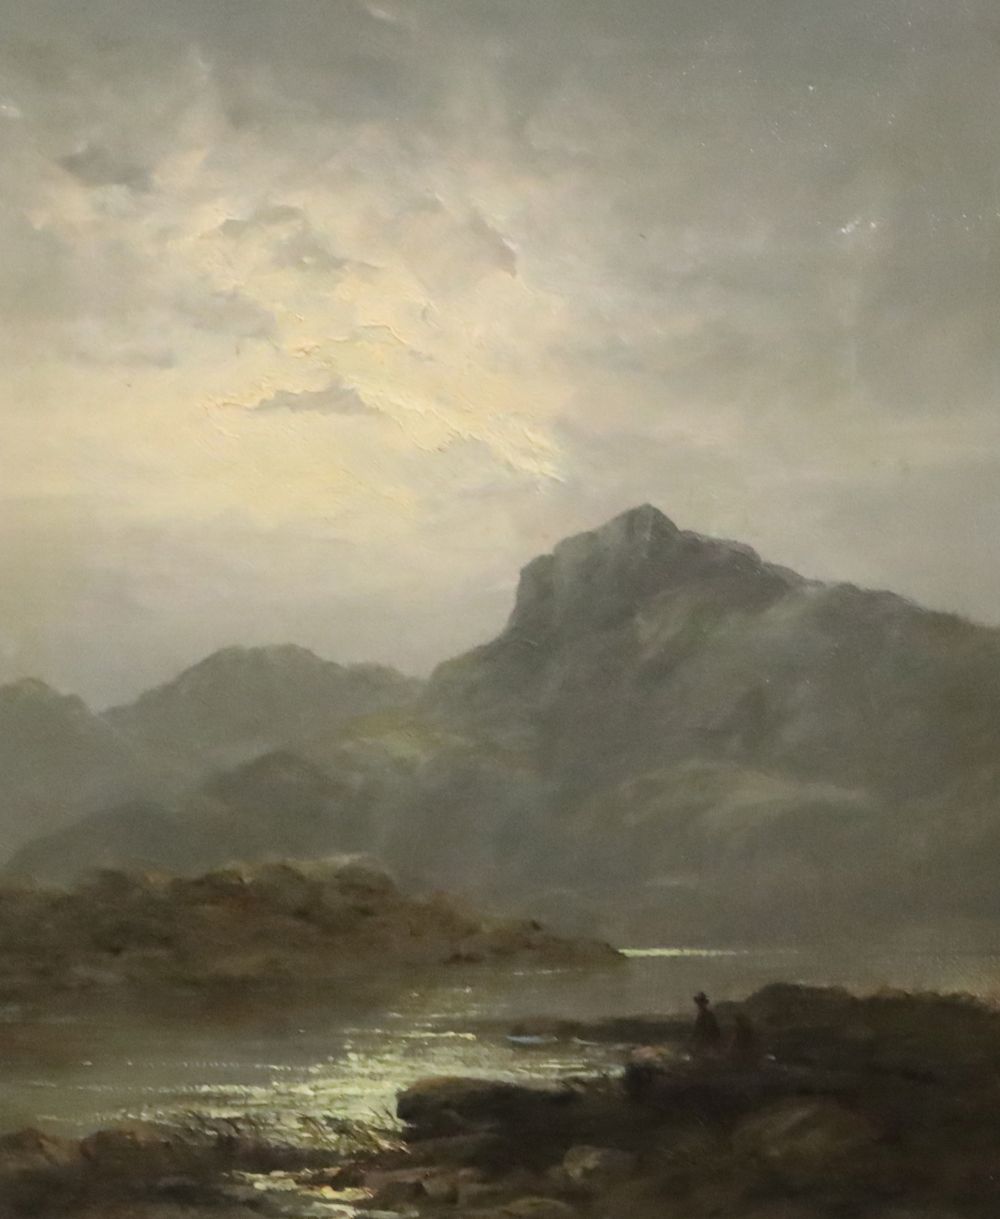 Leopold Rivers (1852-1905) Loch scenes 11.25 x 9.25in.